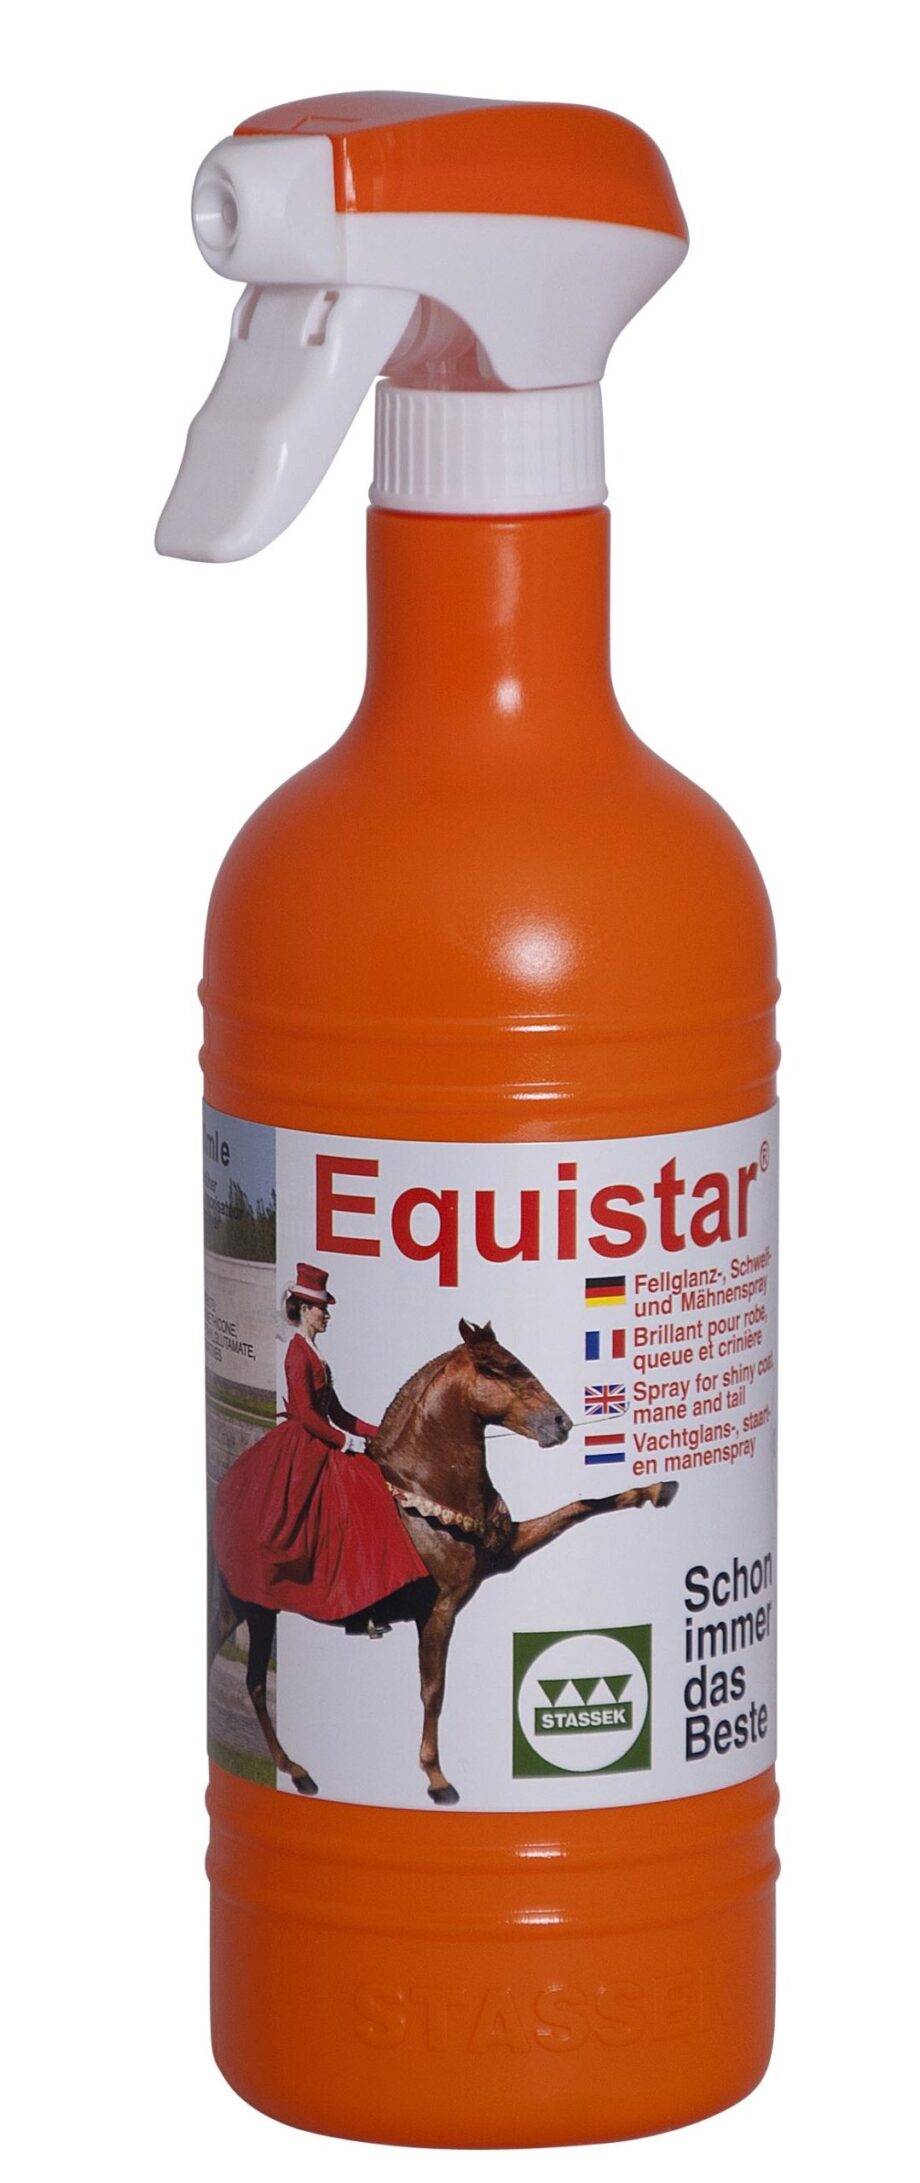 Twój Koń Equistar Stassek płyn nabłyszczający